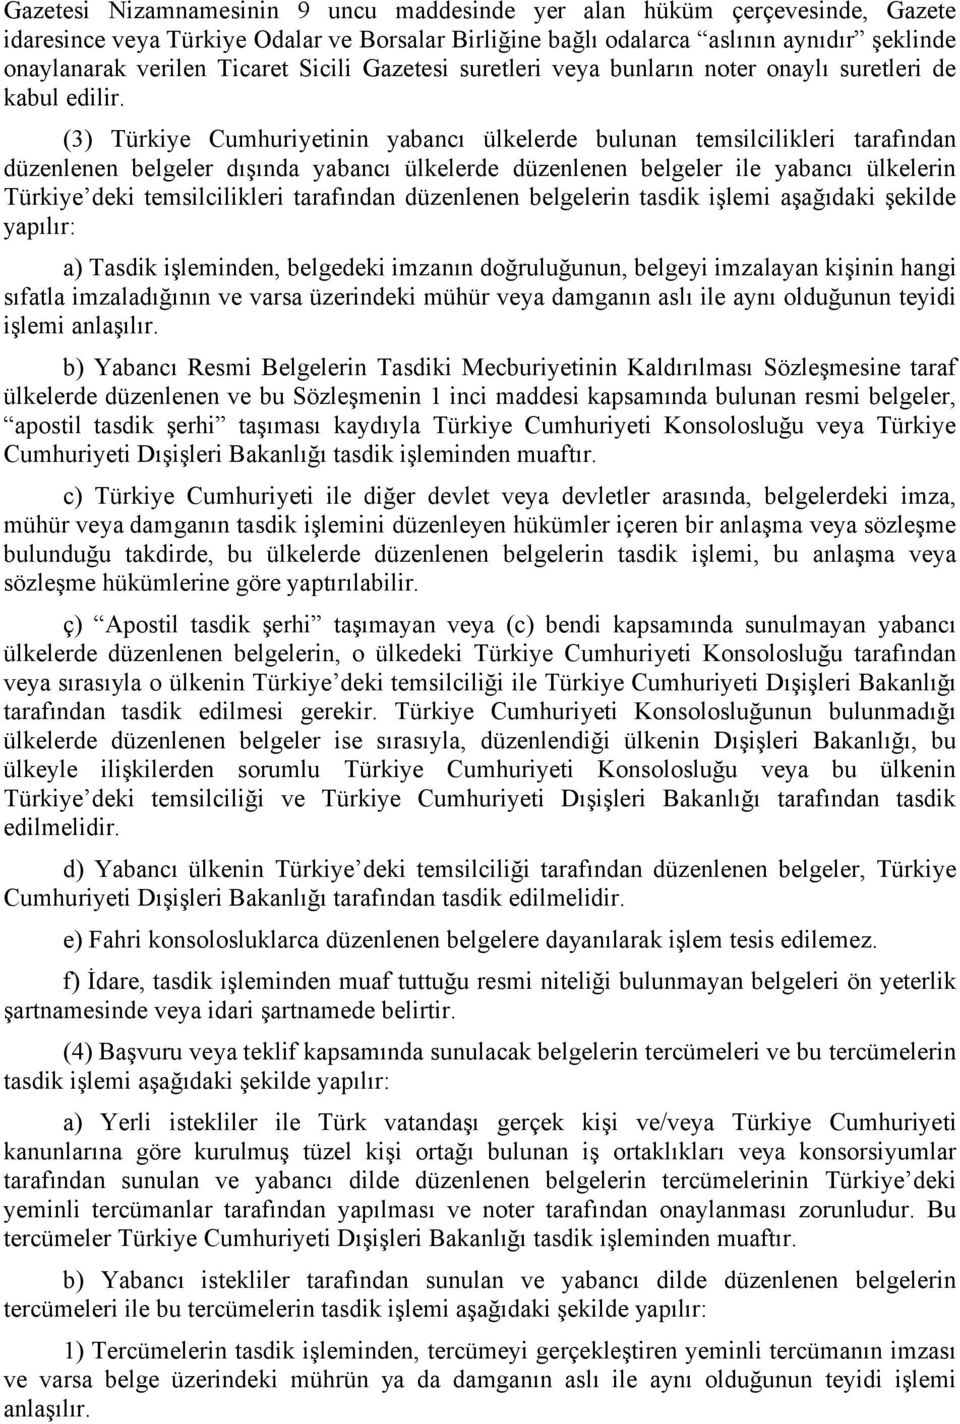 (3) Türkiye Cumhuriyetinin yabancı ülkelerde bulunan temsilcilikleri tarafından düzenlenen belgeler dışında yabancı ülkelerde düzenlenen belgeler ile yabancı ülkelerin Türkiye deki temsilcilikleri